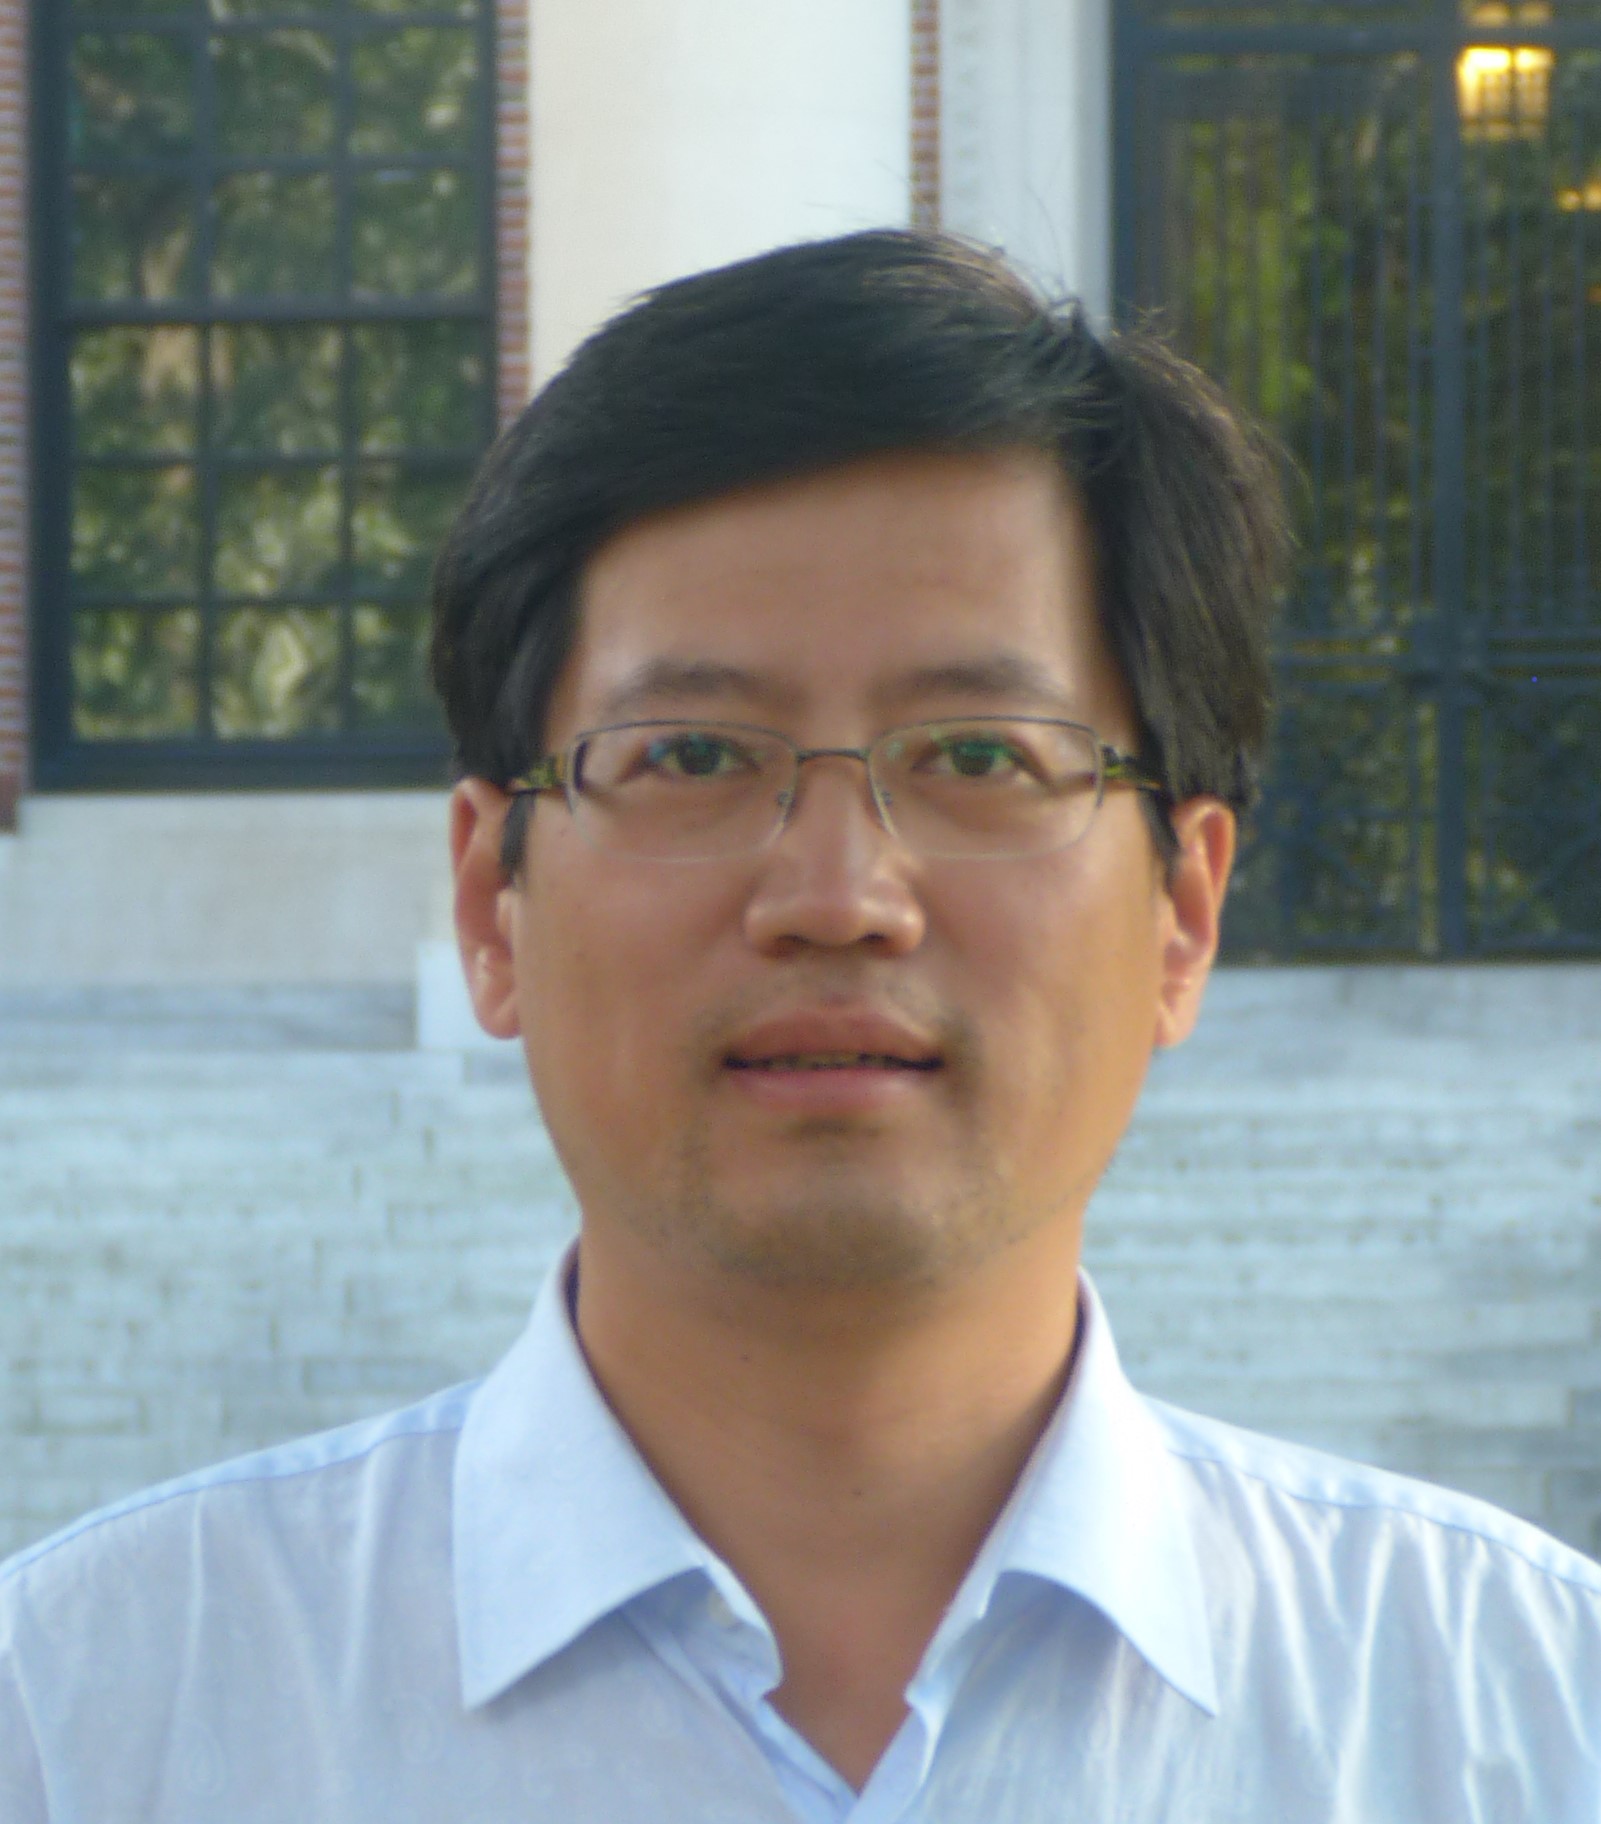 Xingquan Zuo portrait